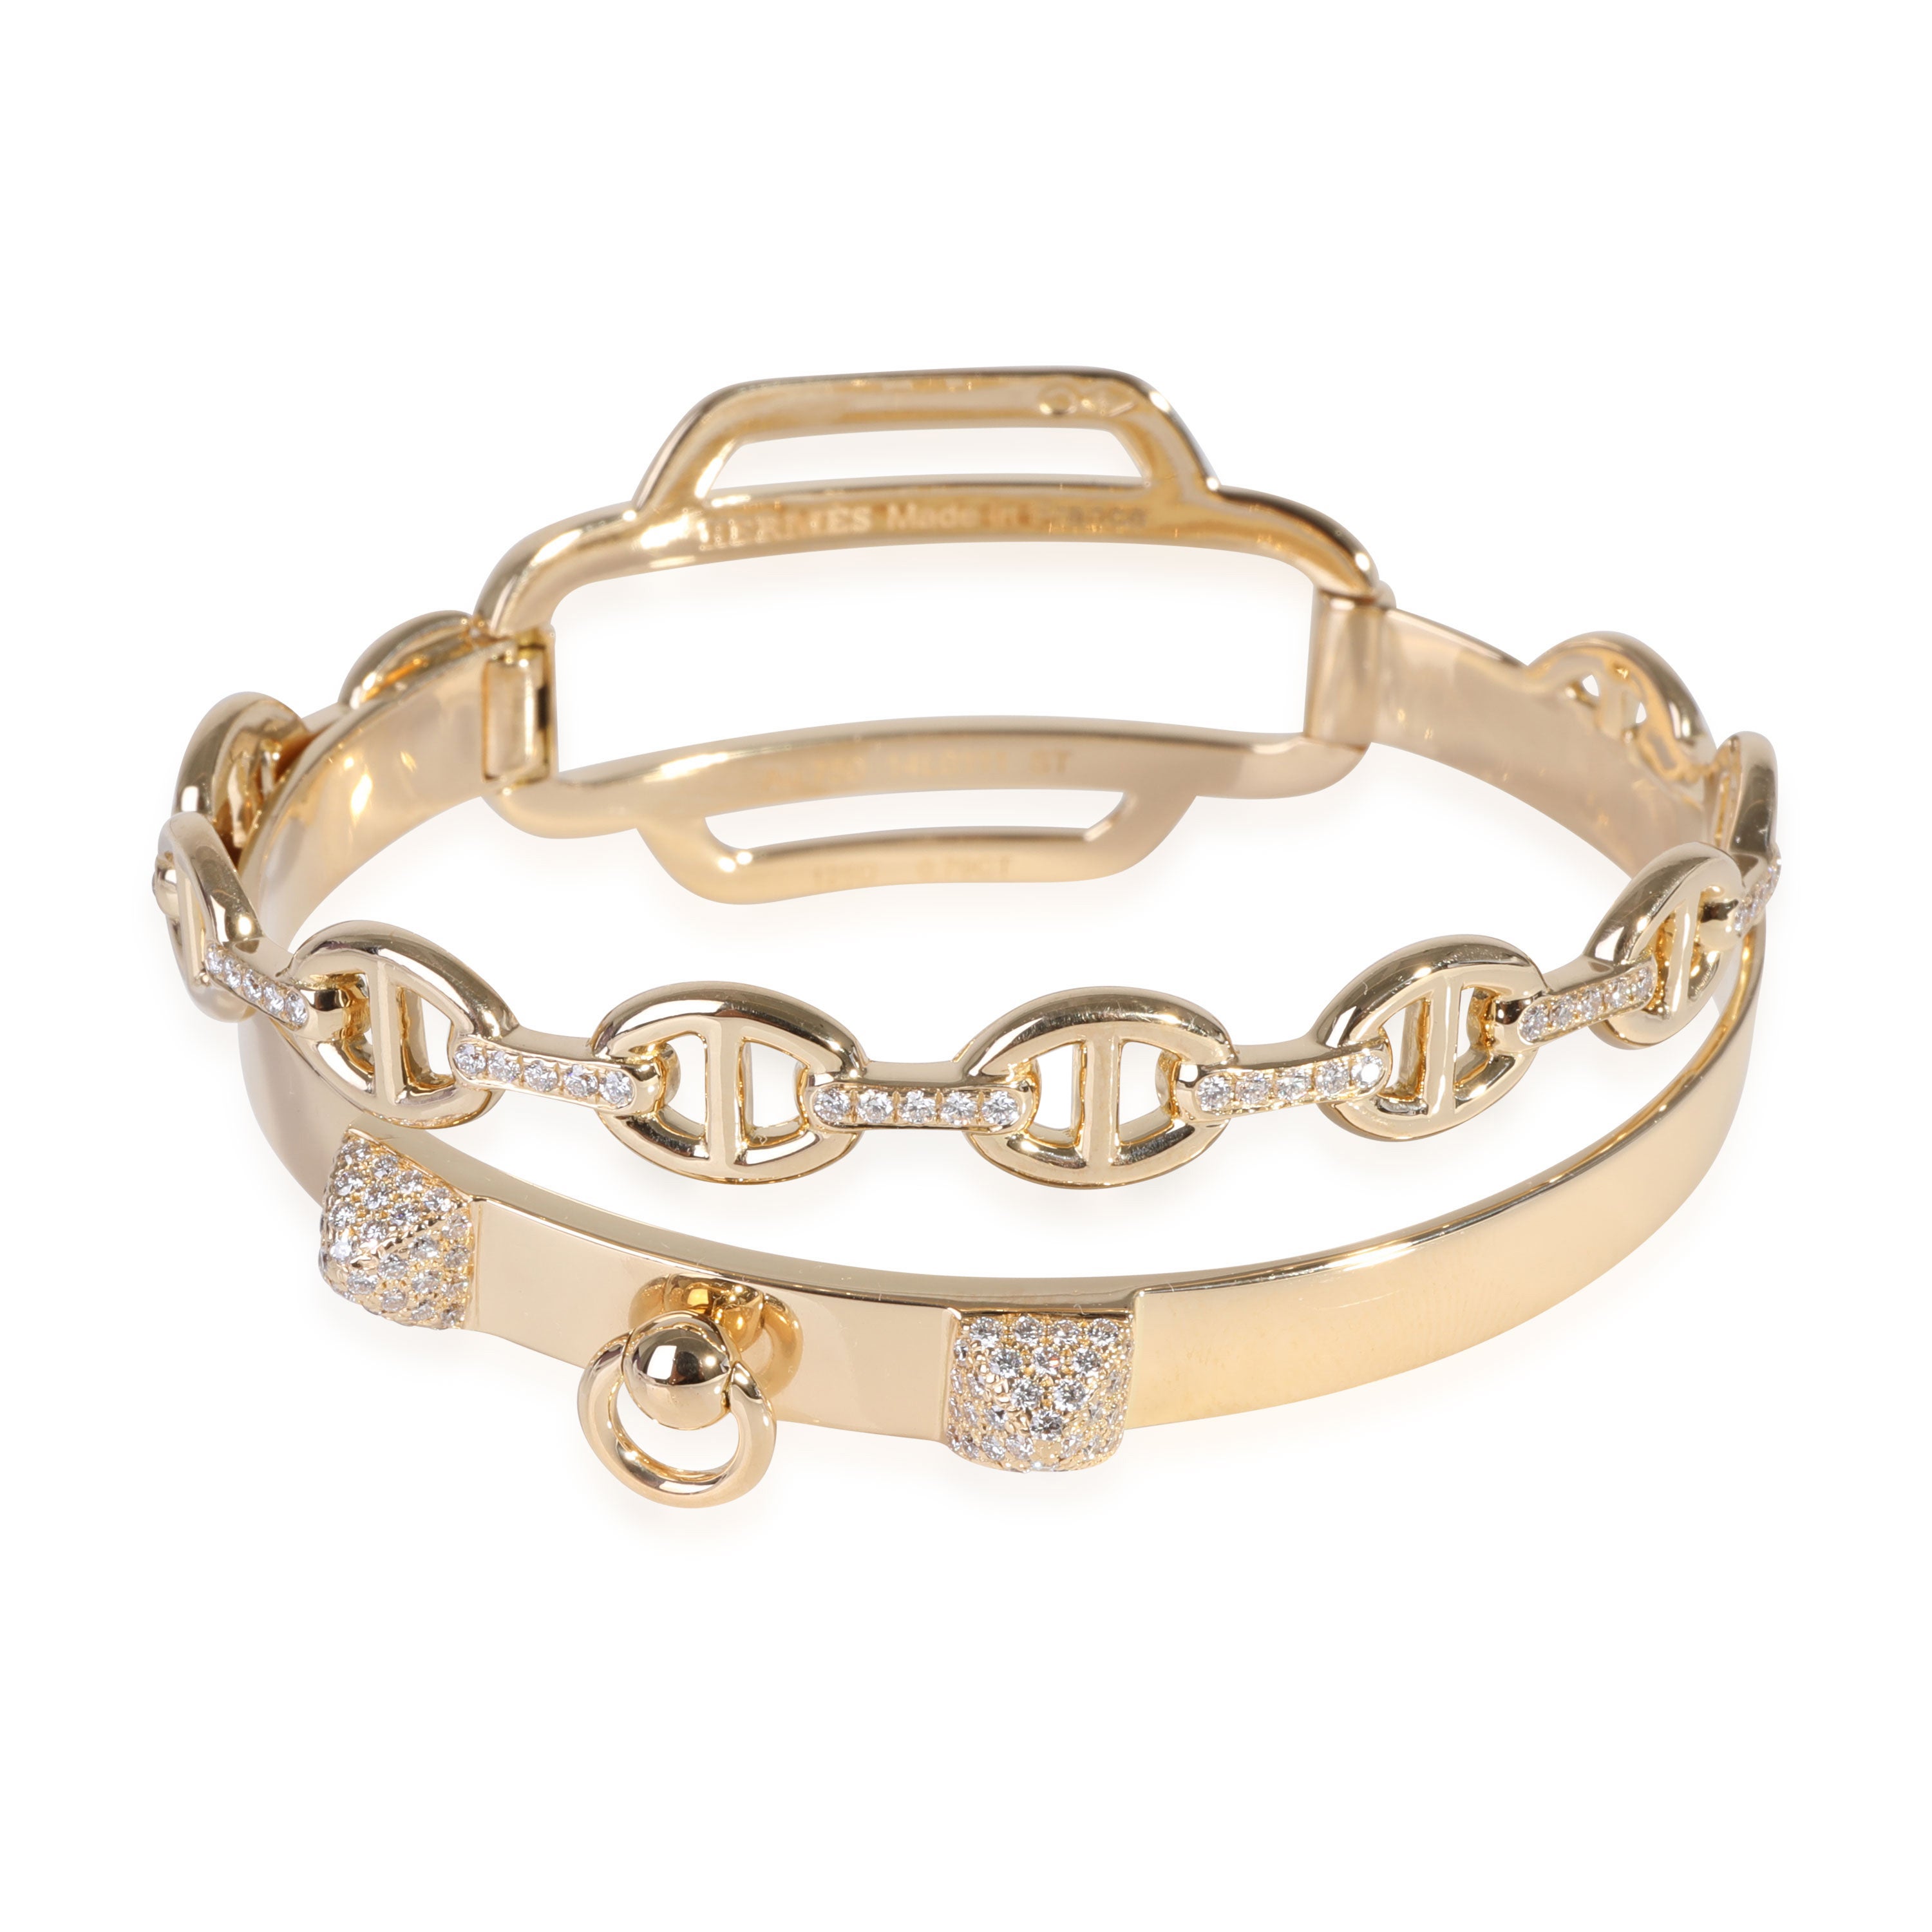 Hermès Collier De Chien Diamant-Armband aus 18k Gelbgold 0,79 CTW